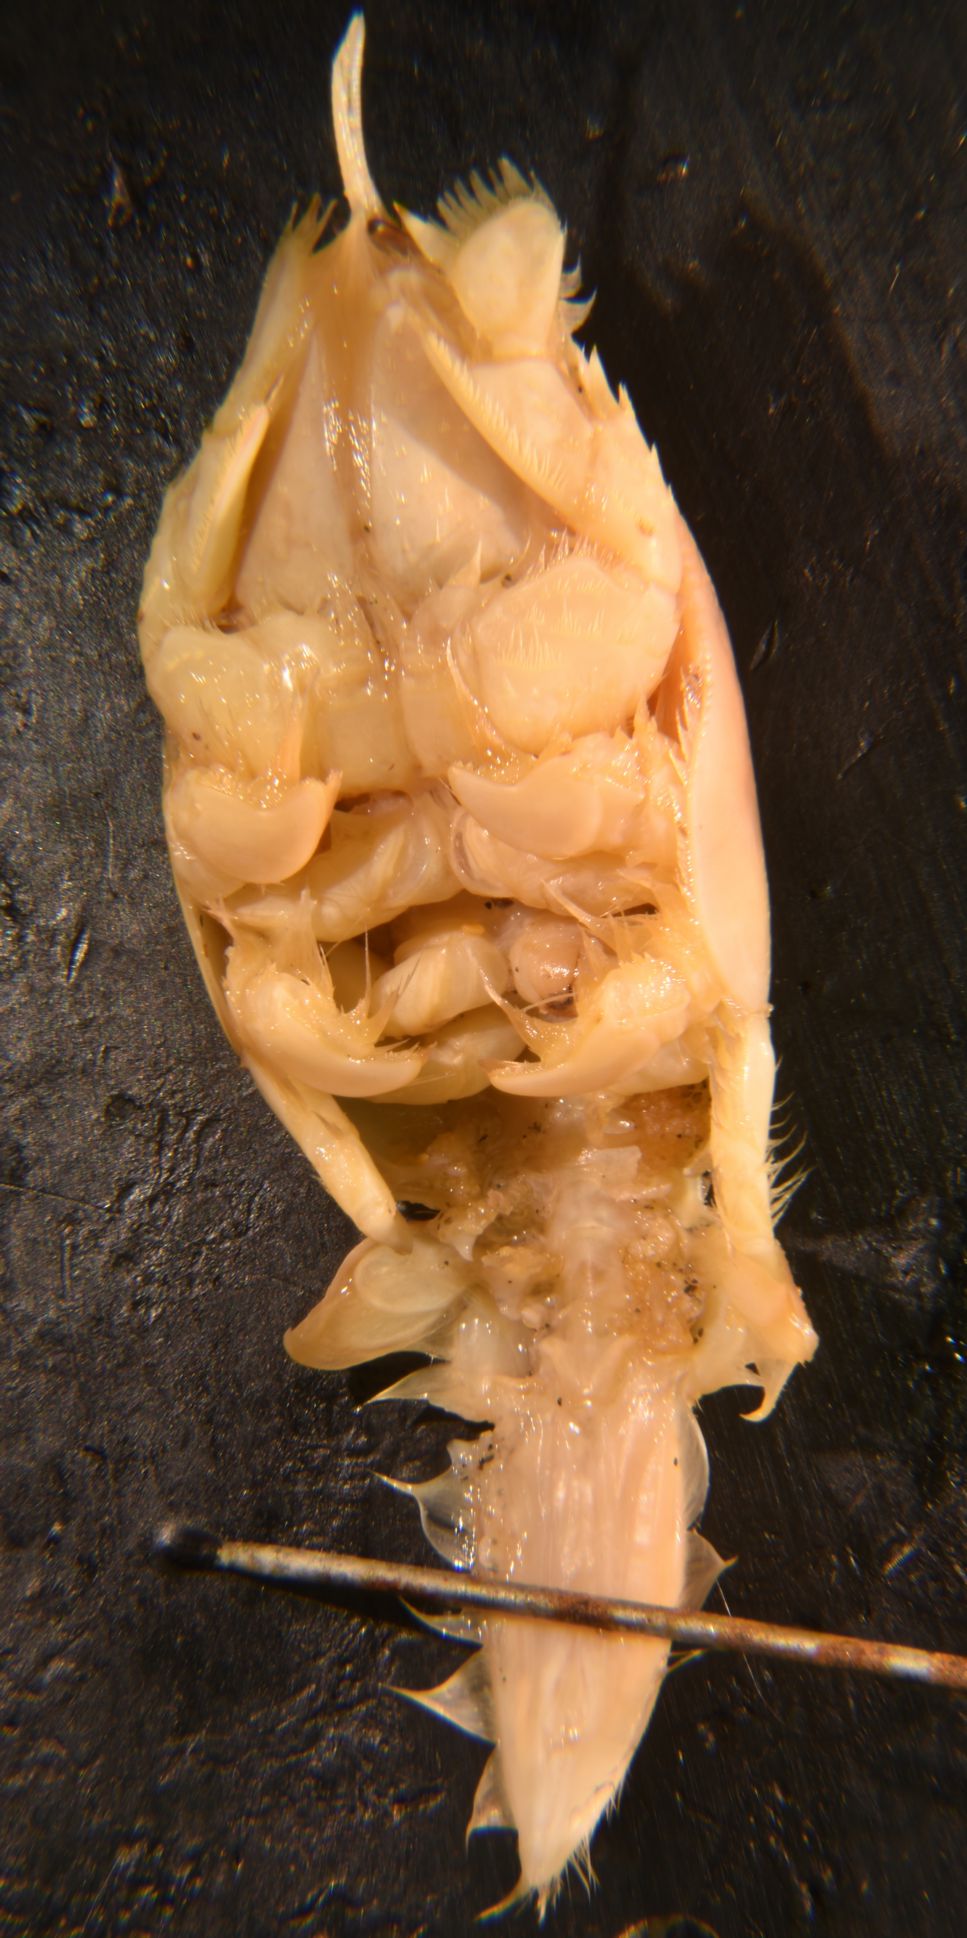 Male ventral